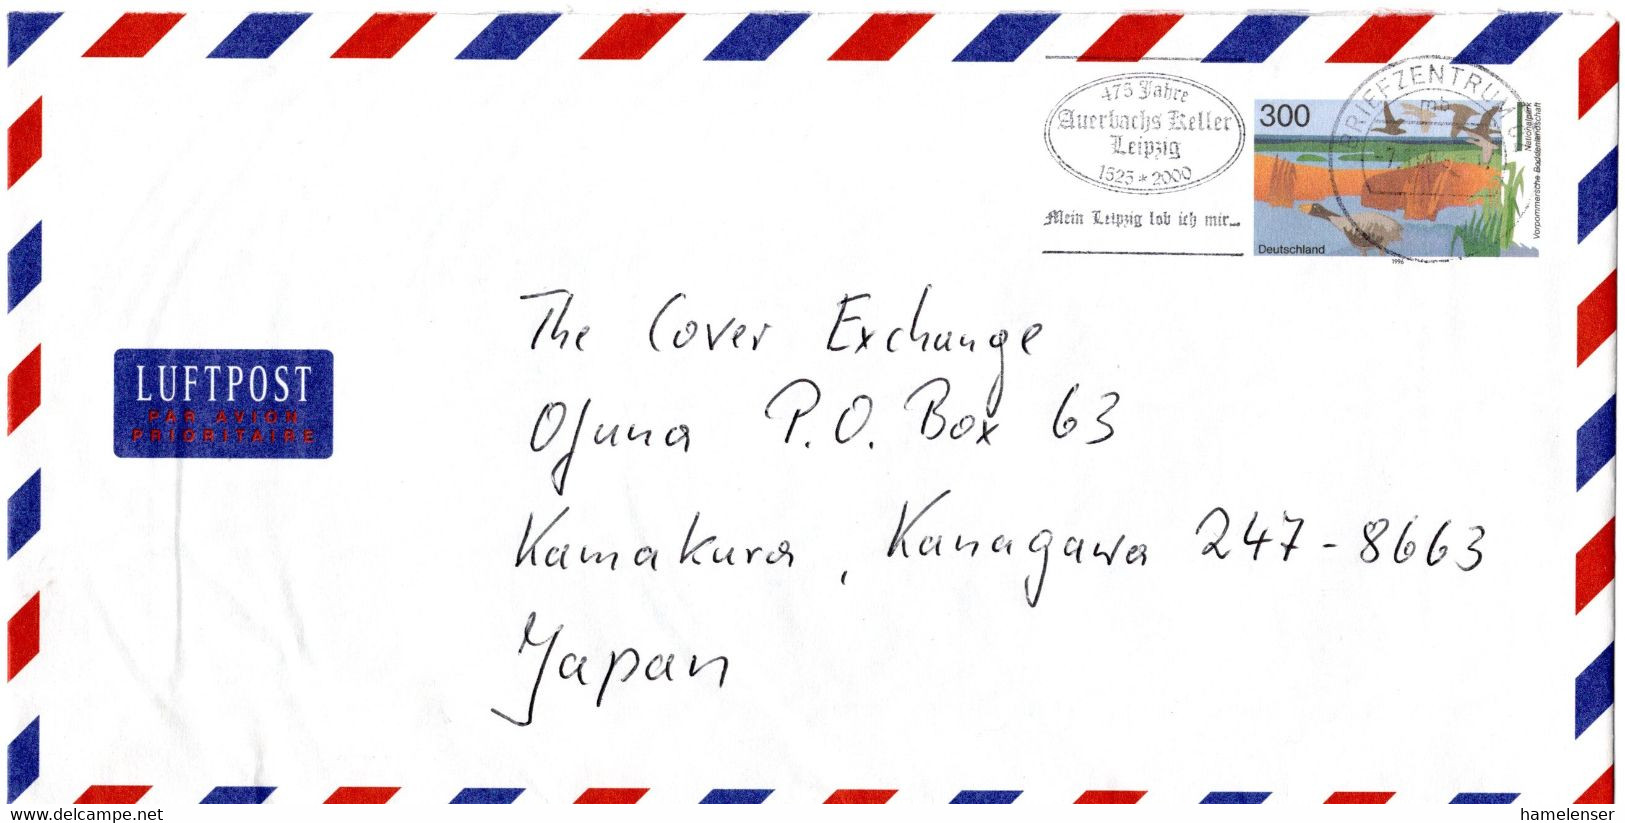 L34005 - Bund - 1999 - 300Pfg. Lp-Plusbrief BZ 04 - 475 JAHRE AUERBACHS KELLER -> Japan - Enveloppes - Oblitérées